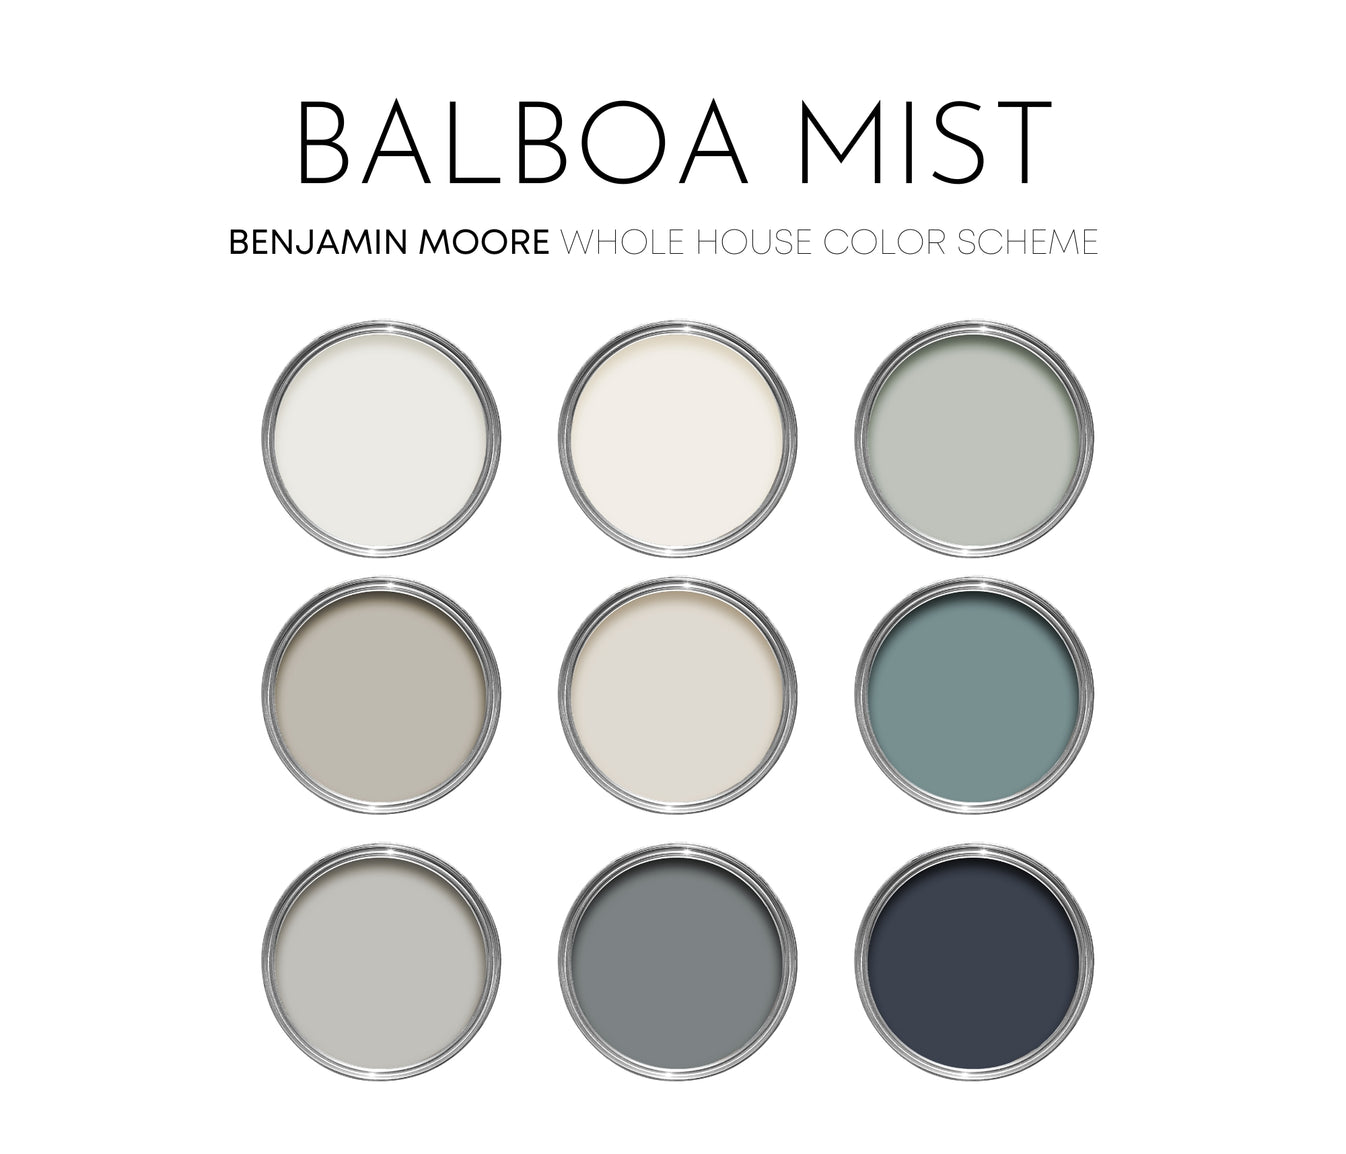 Balboa Mist Benjamin Moore Paint Palette, Neutral Interior Paint Color ...